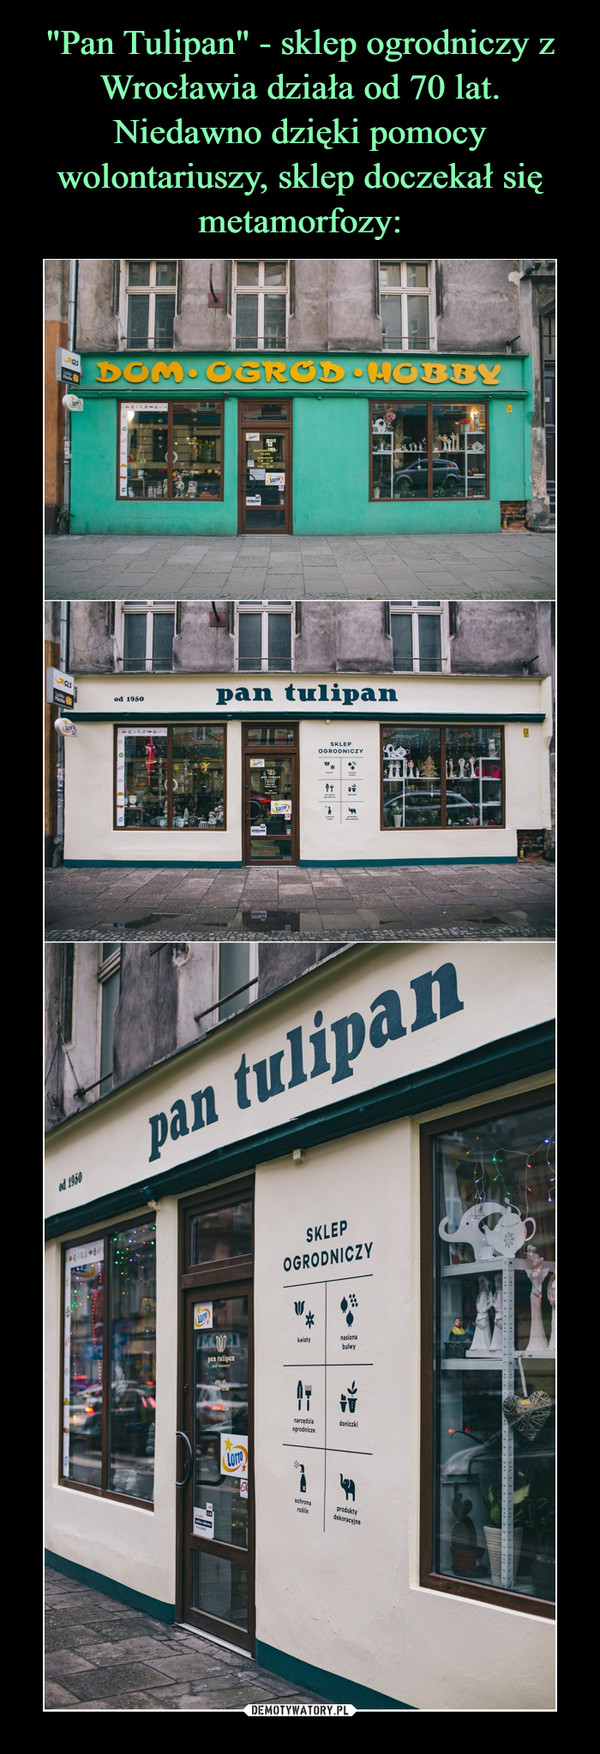 "Pan Tulipan" - sklep ogrodniczy z Wrocławia działa od 70 lat. Niedawno dzięki pomocy wolontariuszy, sklep doczekał się metamorfozy: